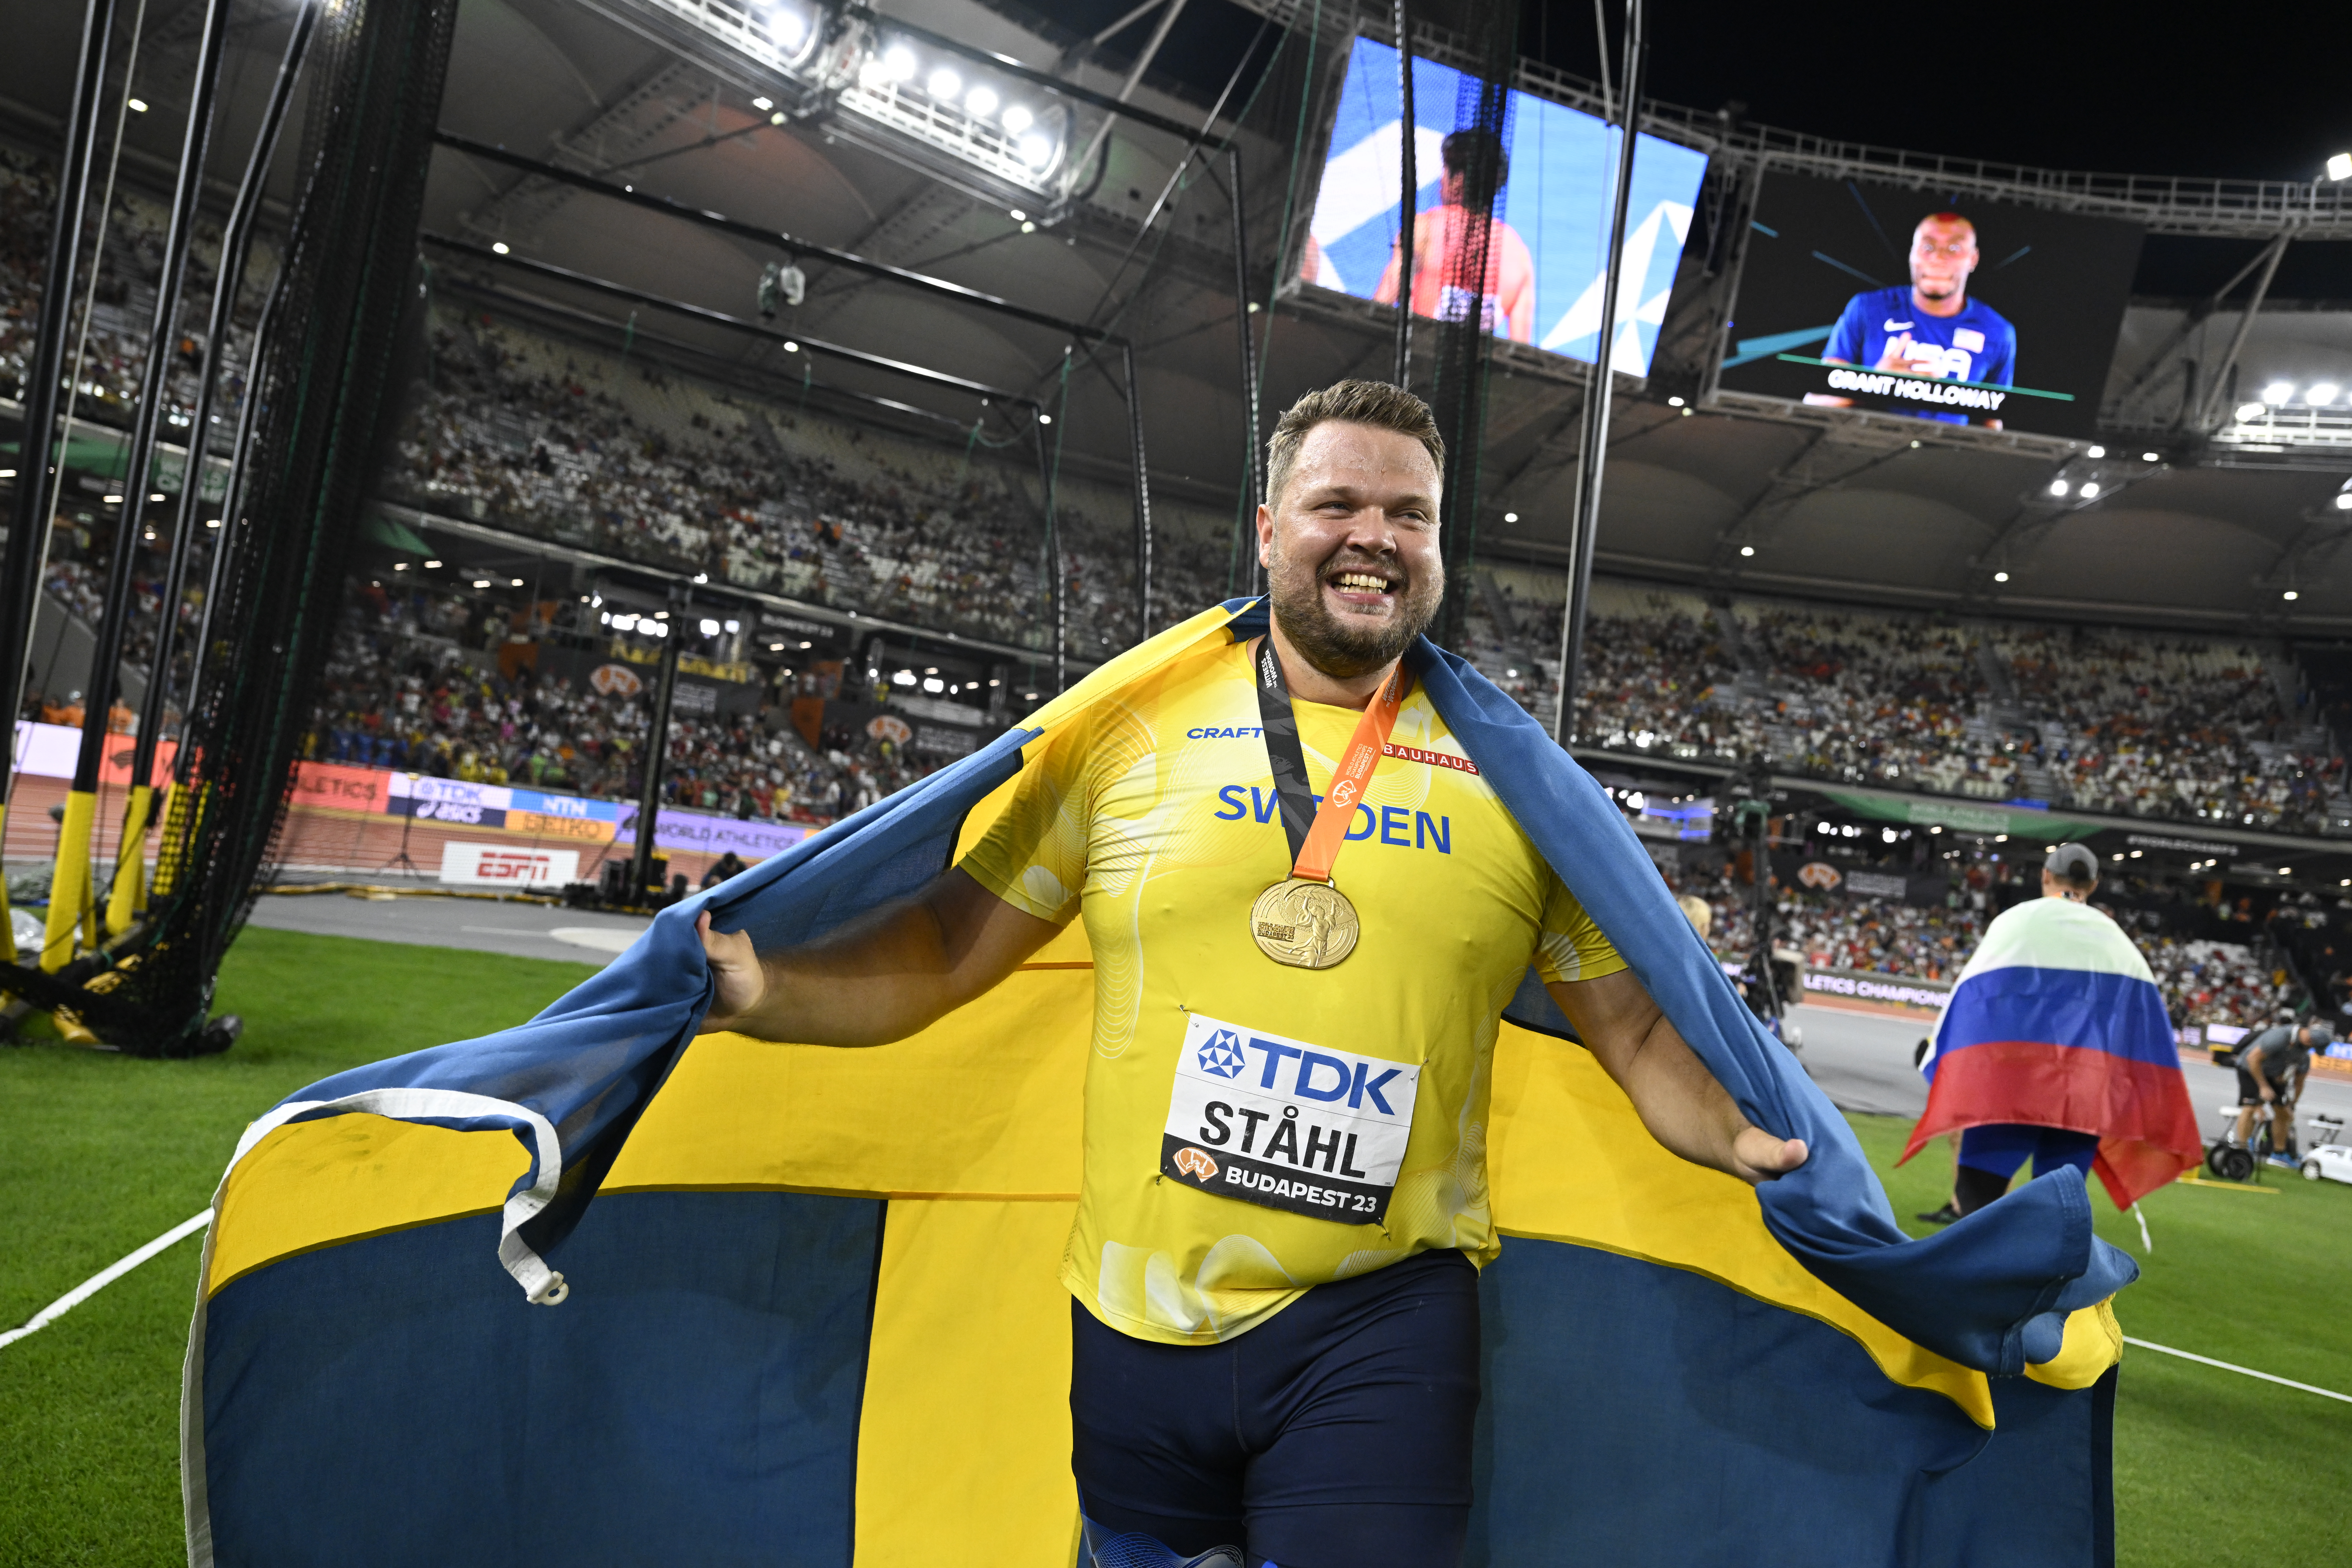 Svenske Daniel Ståhl vann VM-guld i augusti i år. För det avslutande diskuskastet i finalen fick Ståhl även ta emot Bragdguldet. Arkivbild.